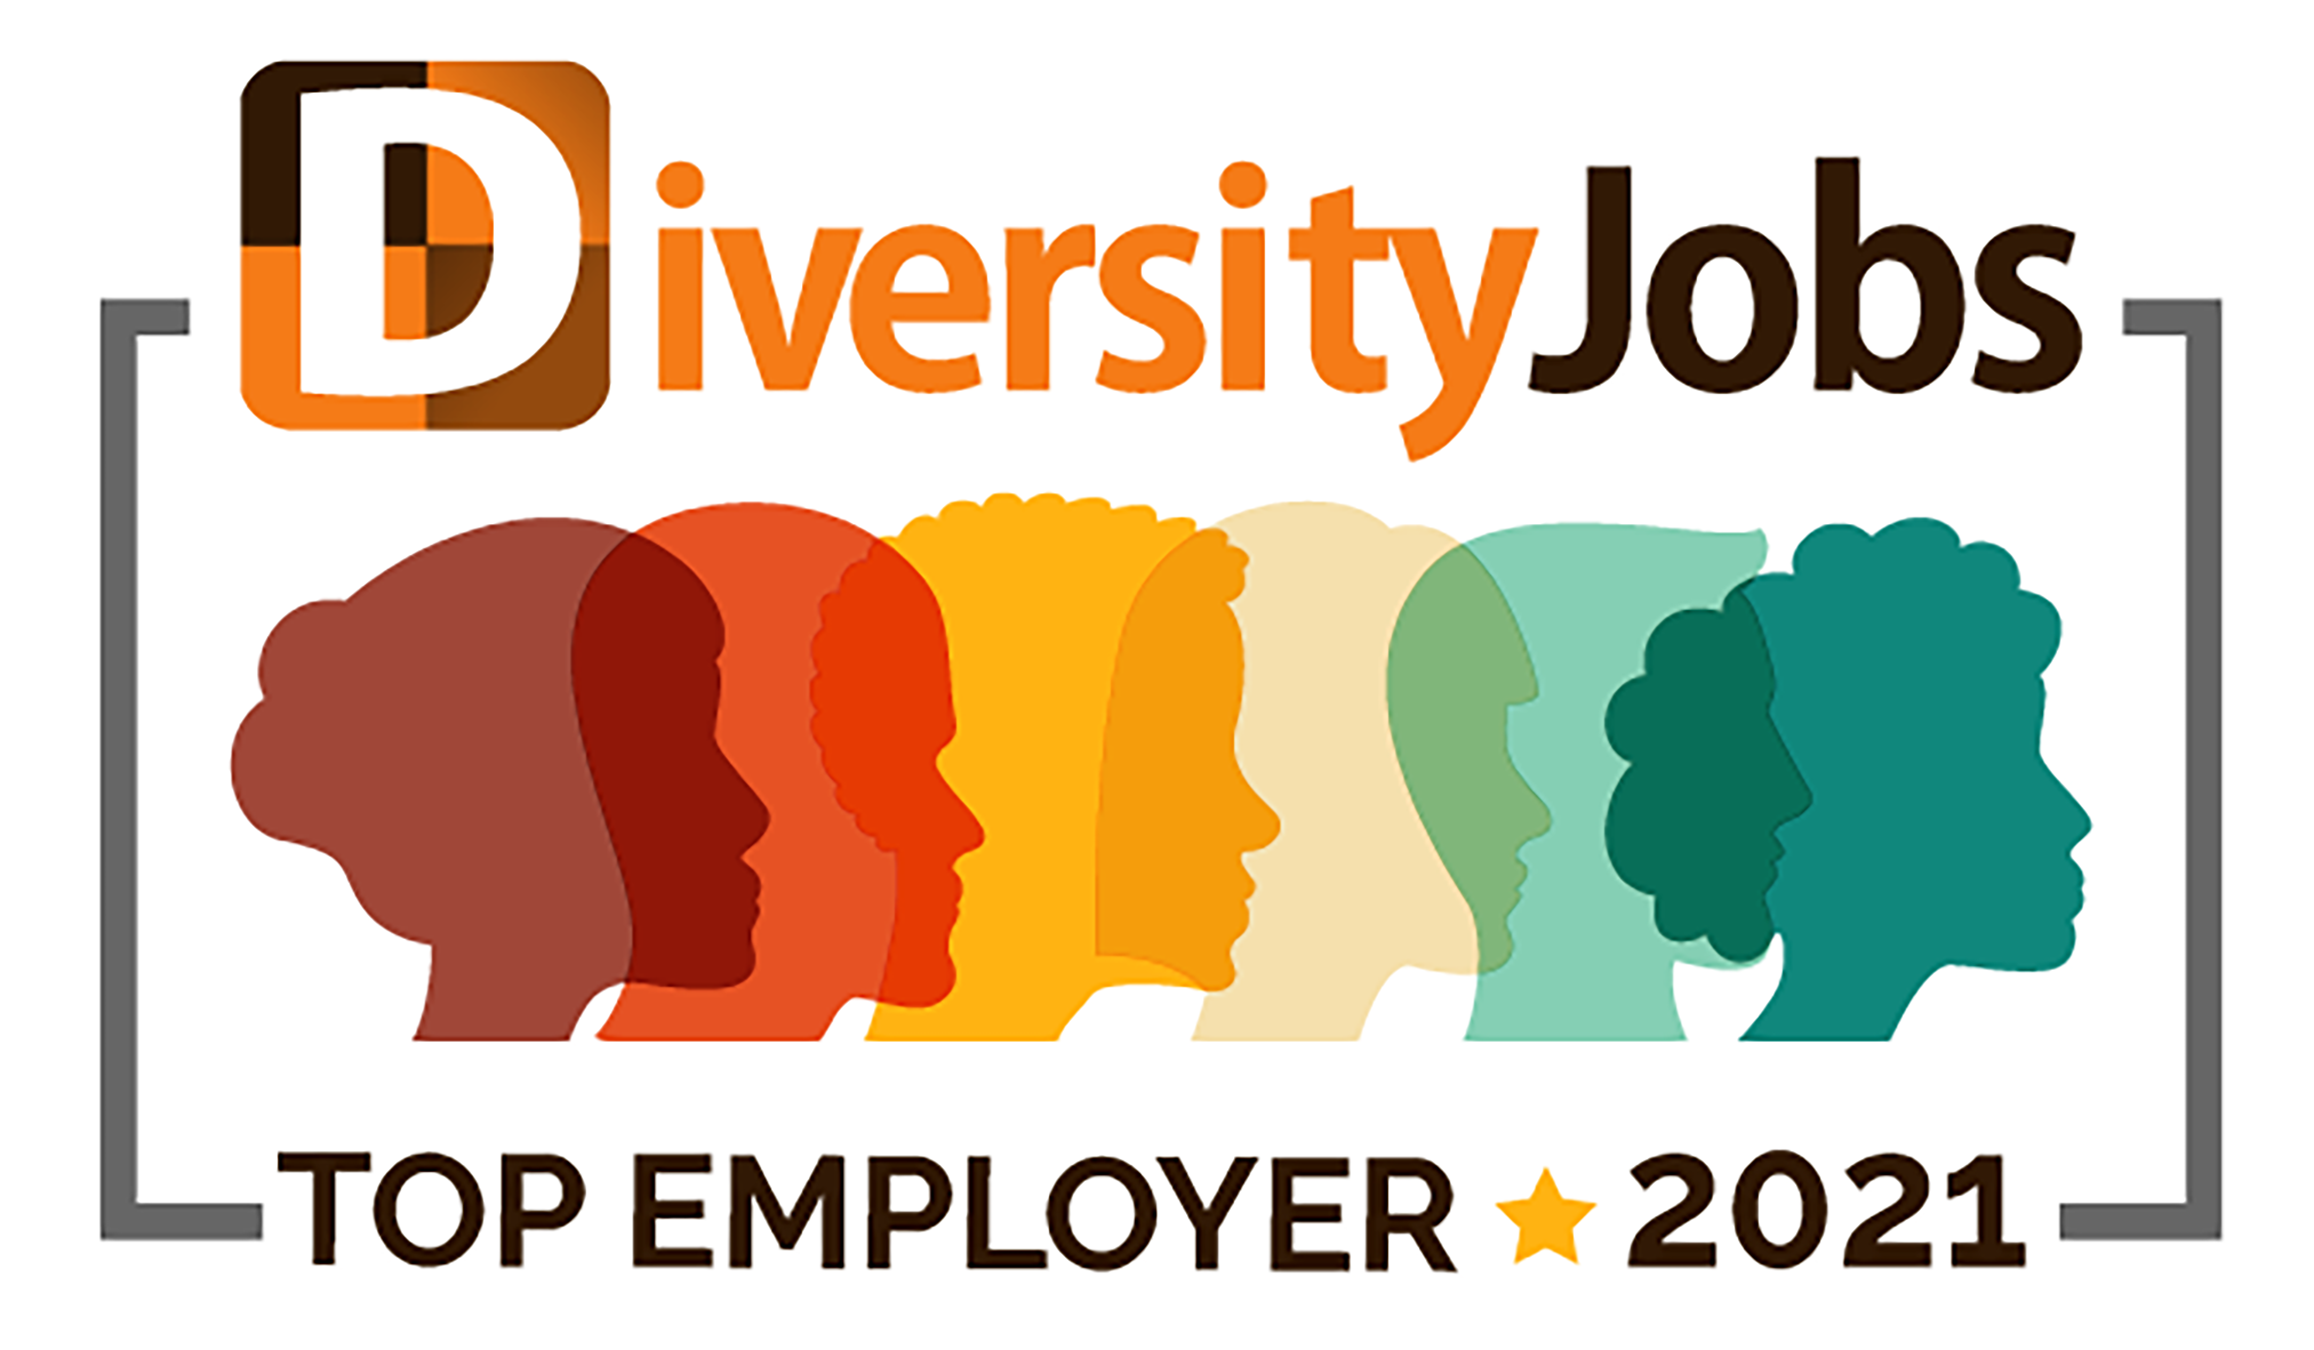 Diversity Jobs Top Employeer 2021 logo